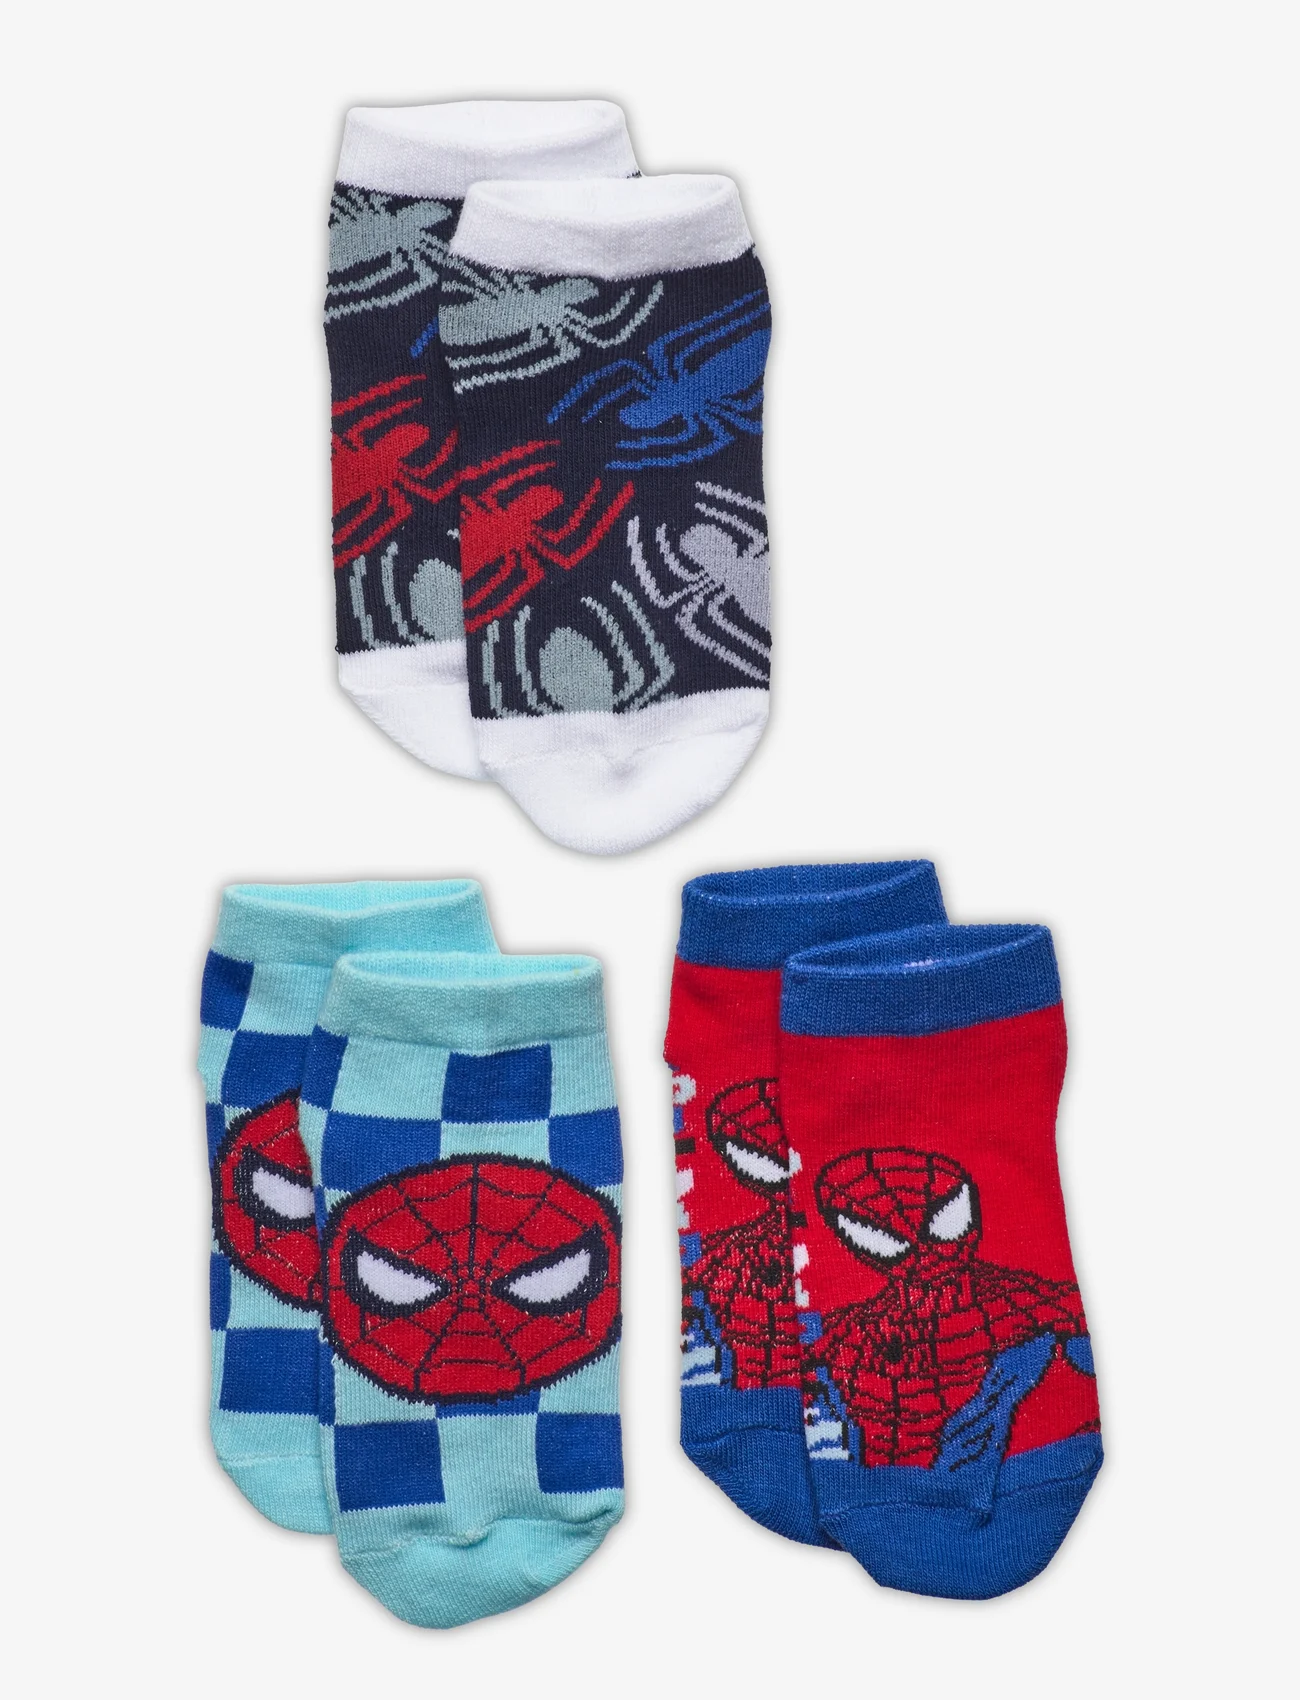 Marvel - Pack 3 low socks - zemākās cenas - blue - 0